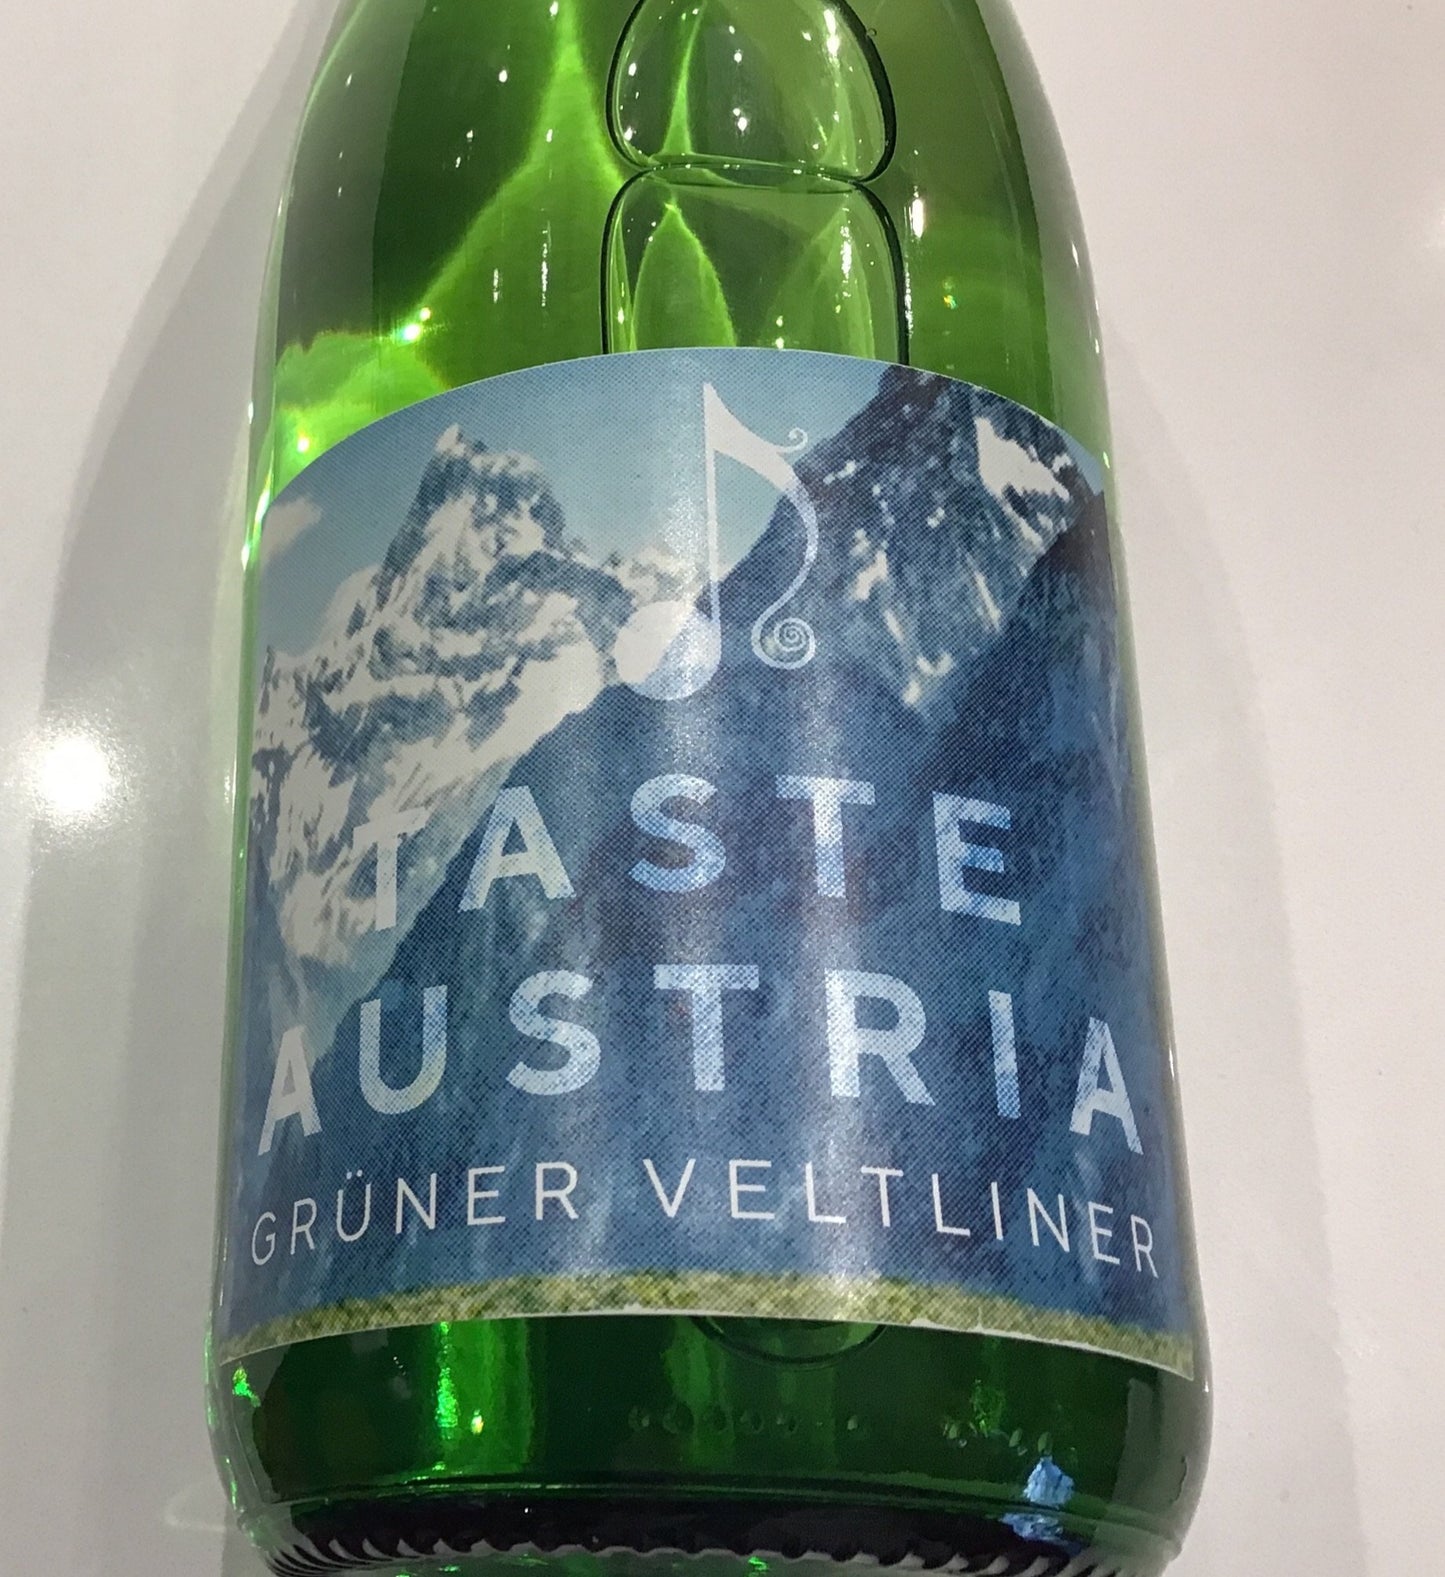 Minkowitsch ‘Taste Austria’ Grüner Veltliner